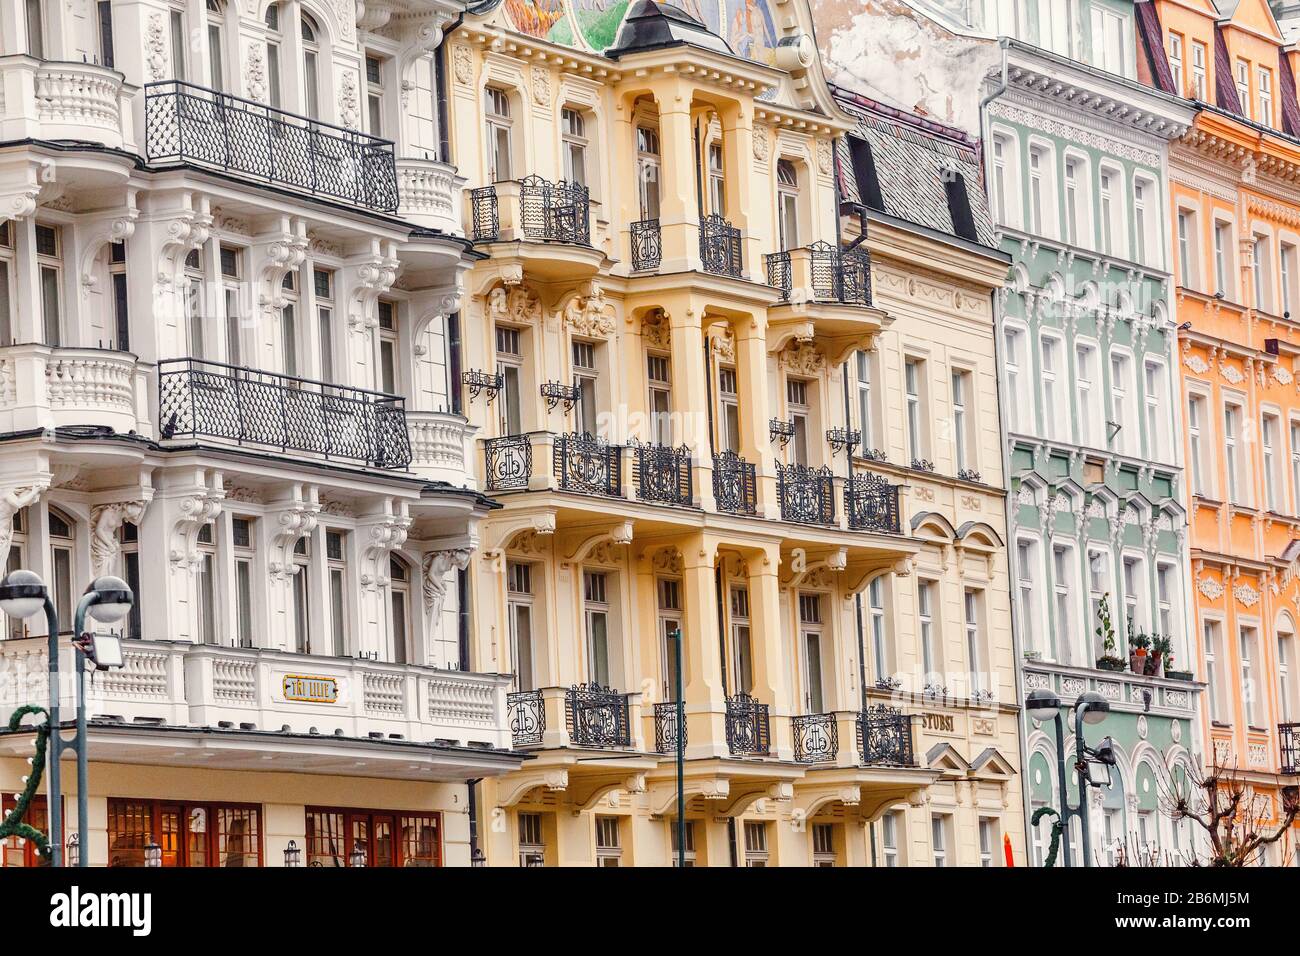 Dicembre 2017, KARLOVY VARY, REPUBBLICA CECA: Hotel colorati e architettura tradizionale nella città resort di Karlovy Vary nella Repubblica Ceca. Foto Stock